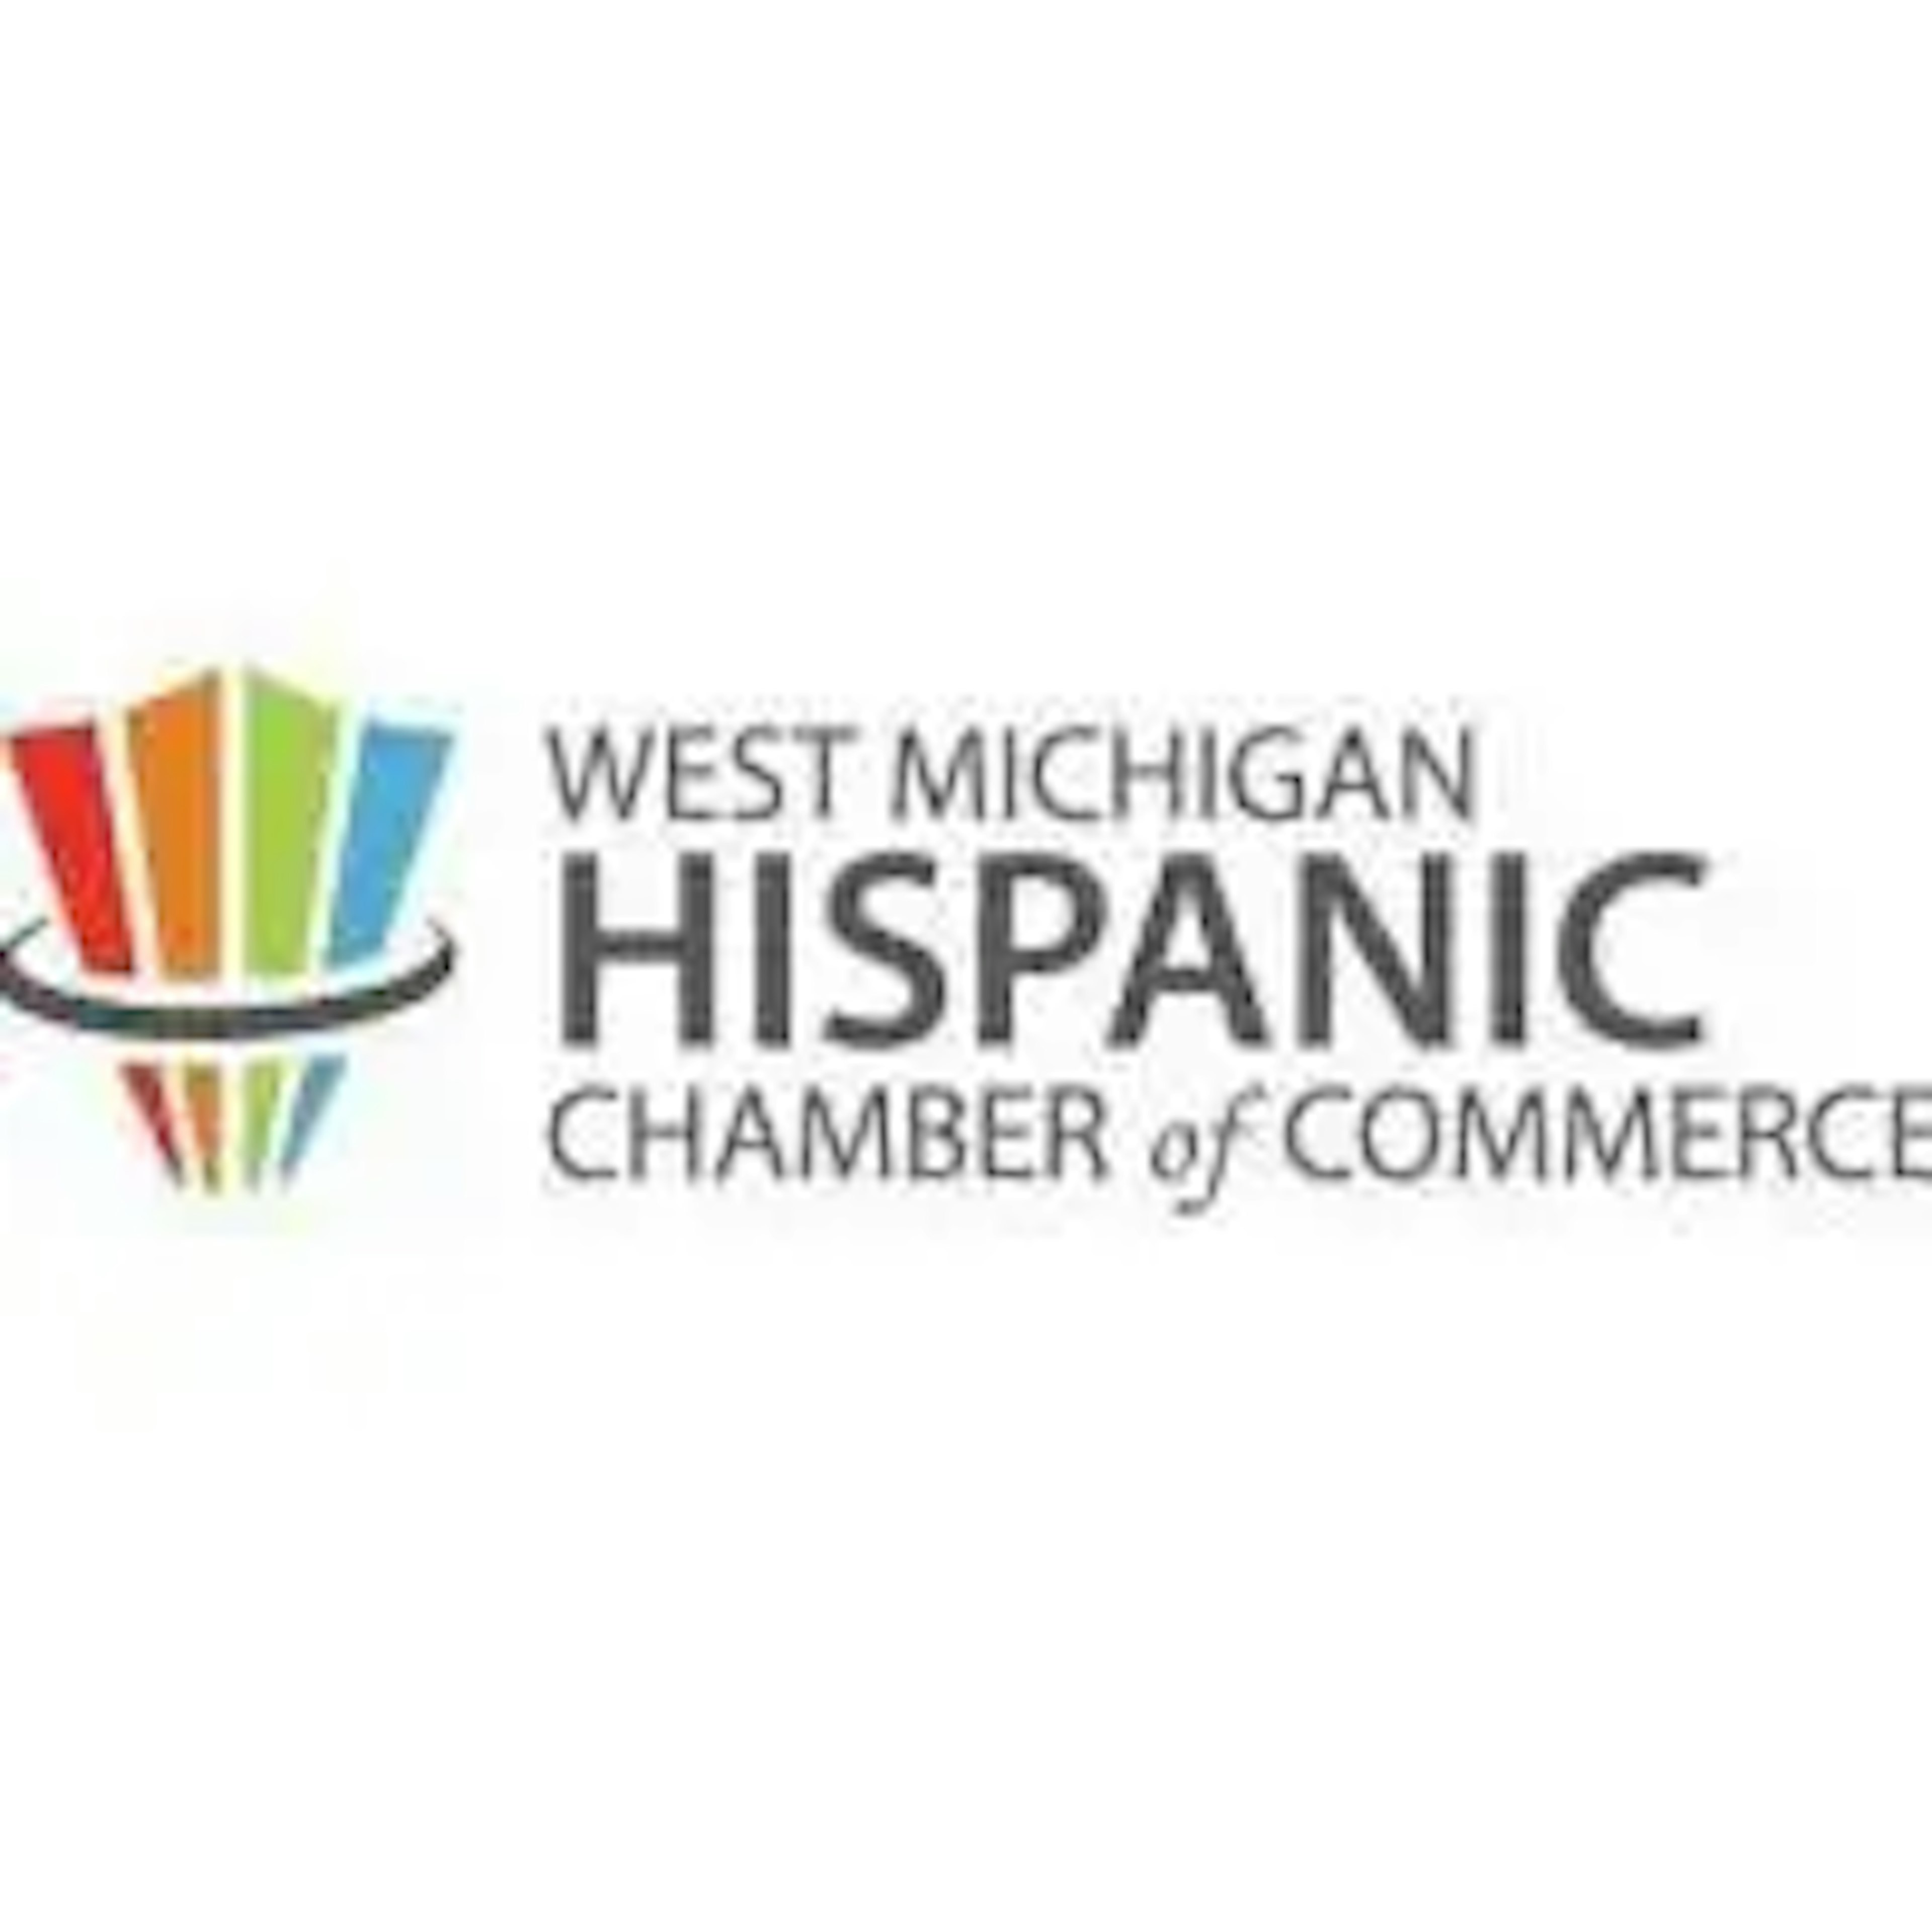 West Michigan Hispanic Chamber